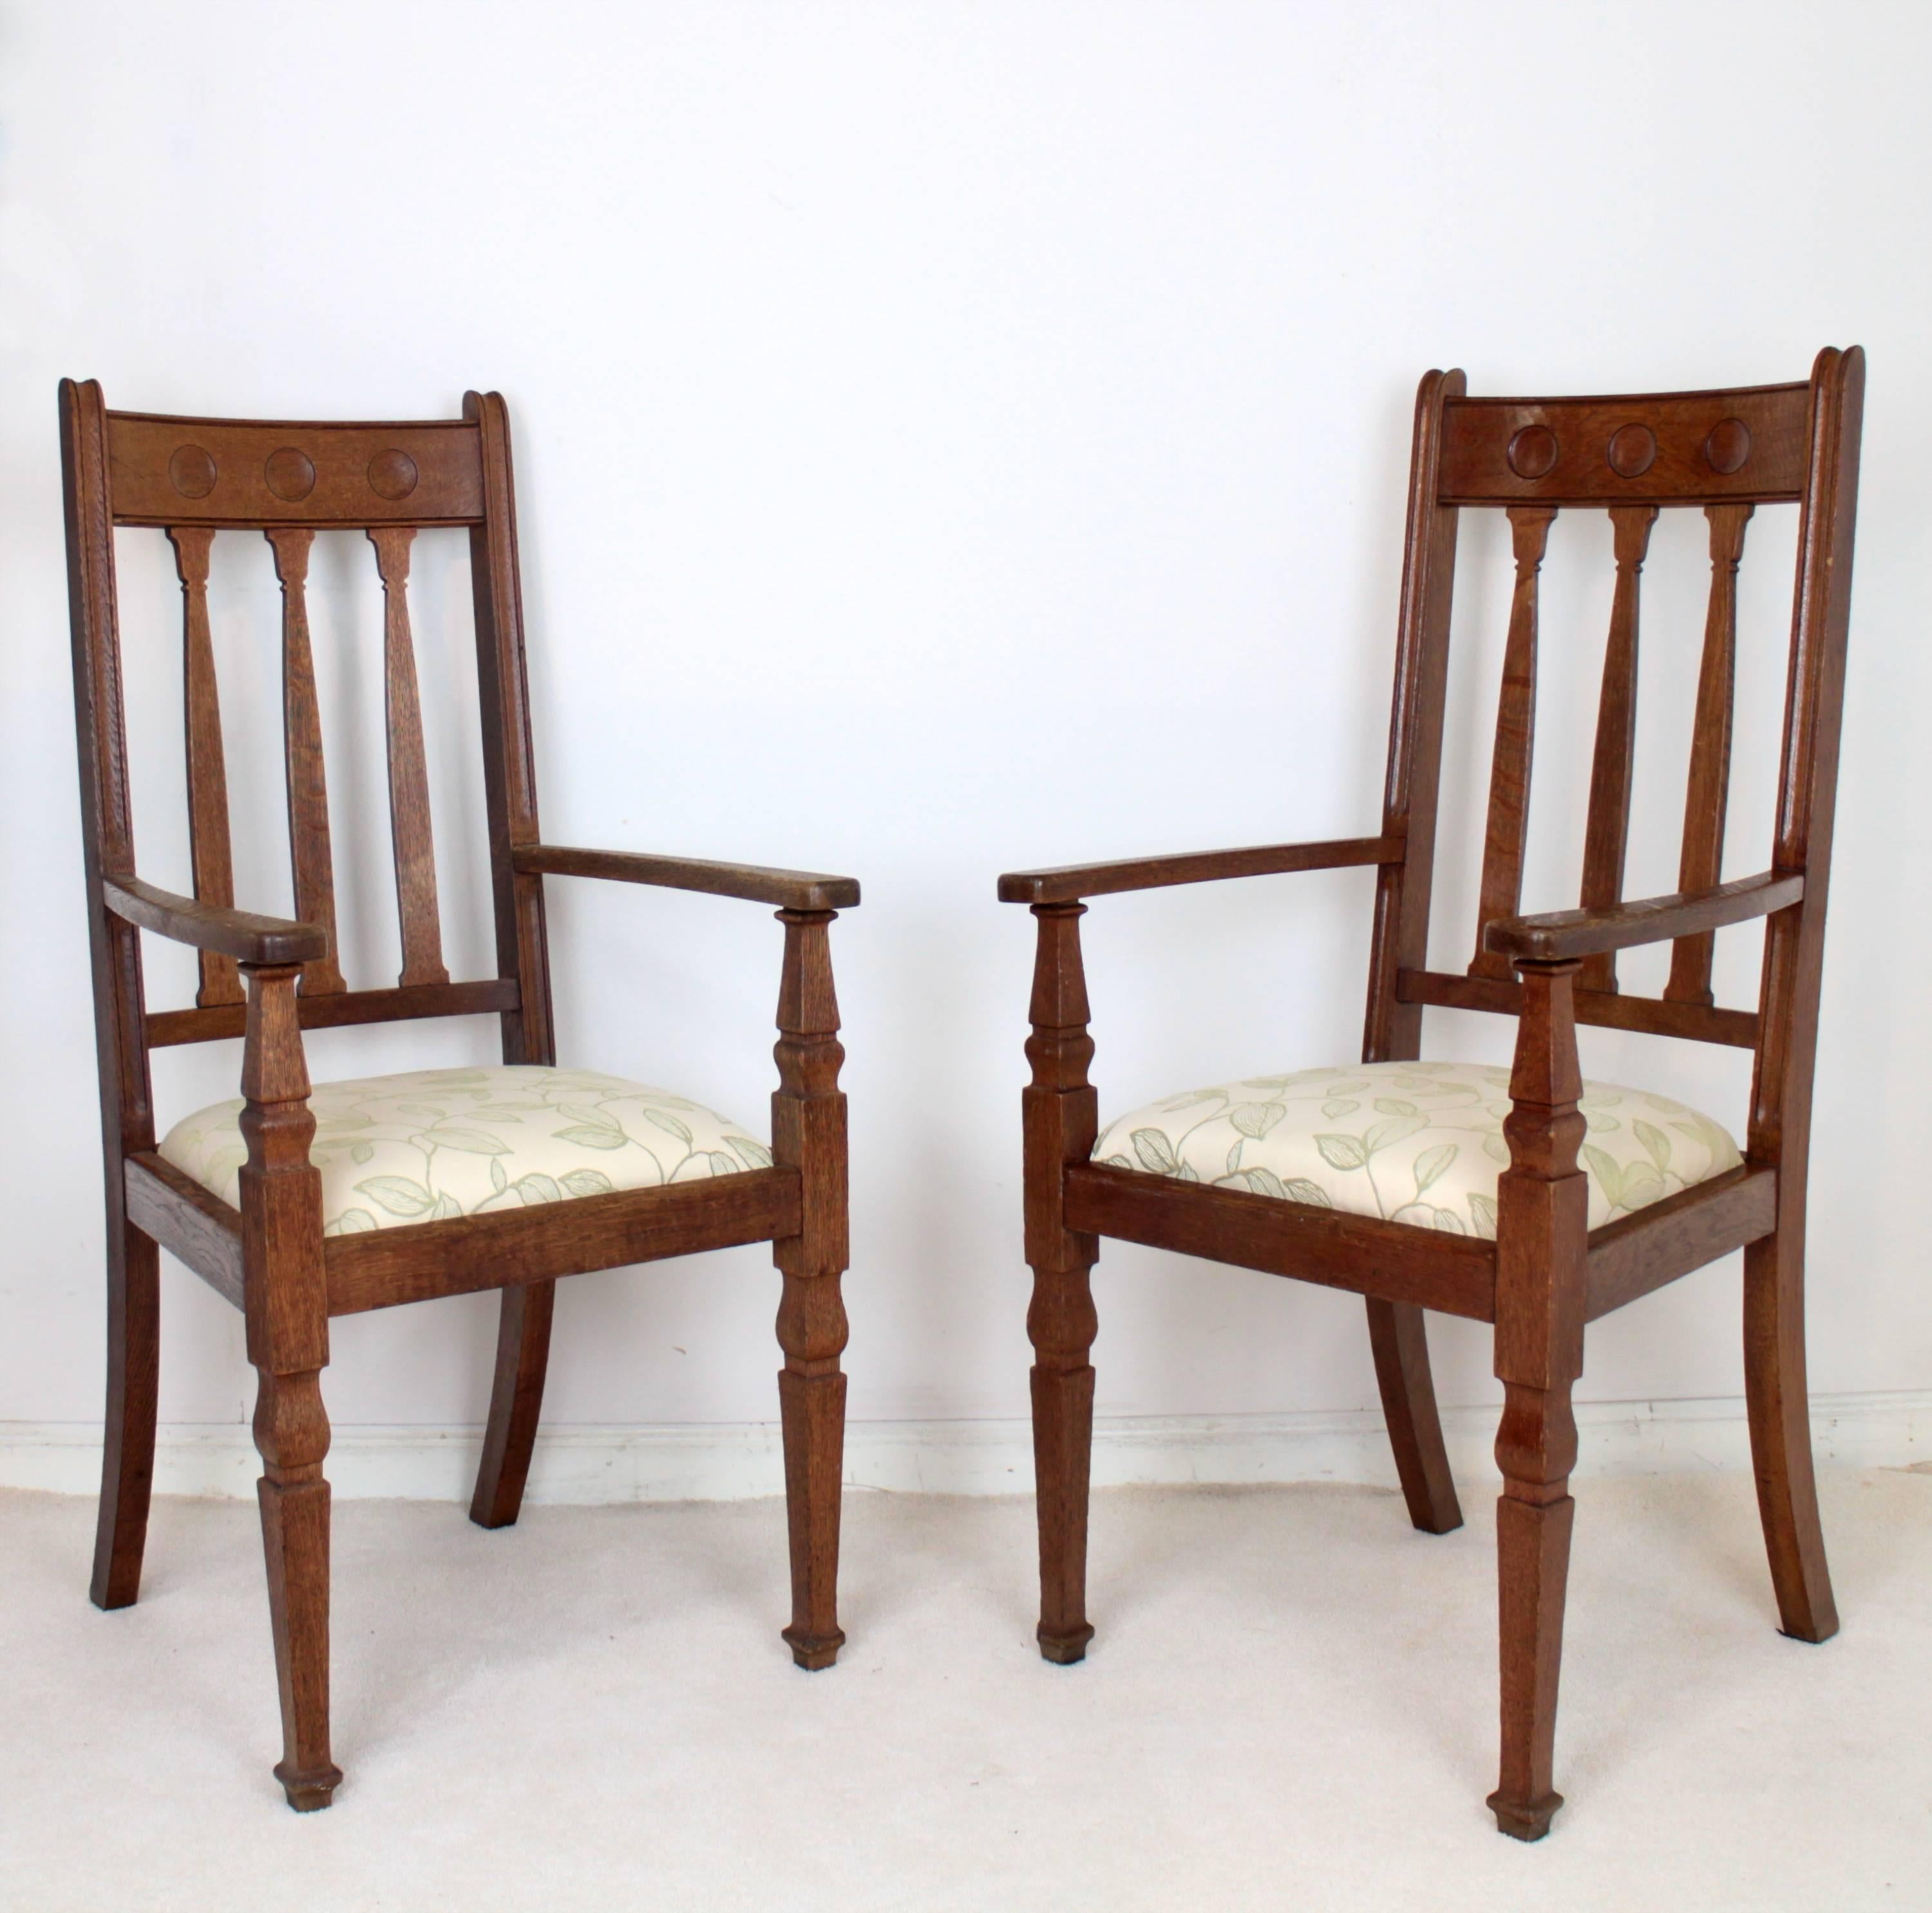 Une superbe paire de fauteuils ouverts en chêne Arts & Crafts par Shapland & Petter de Barnstaple et datant d'environ 1910. Avec trois rosettes sur la traverse supérieure et des éclisses en forme de tulipe en dessous, ils ont de larges accoudoirs